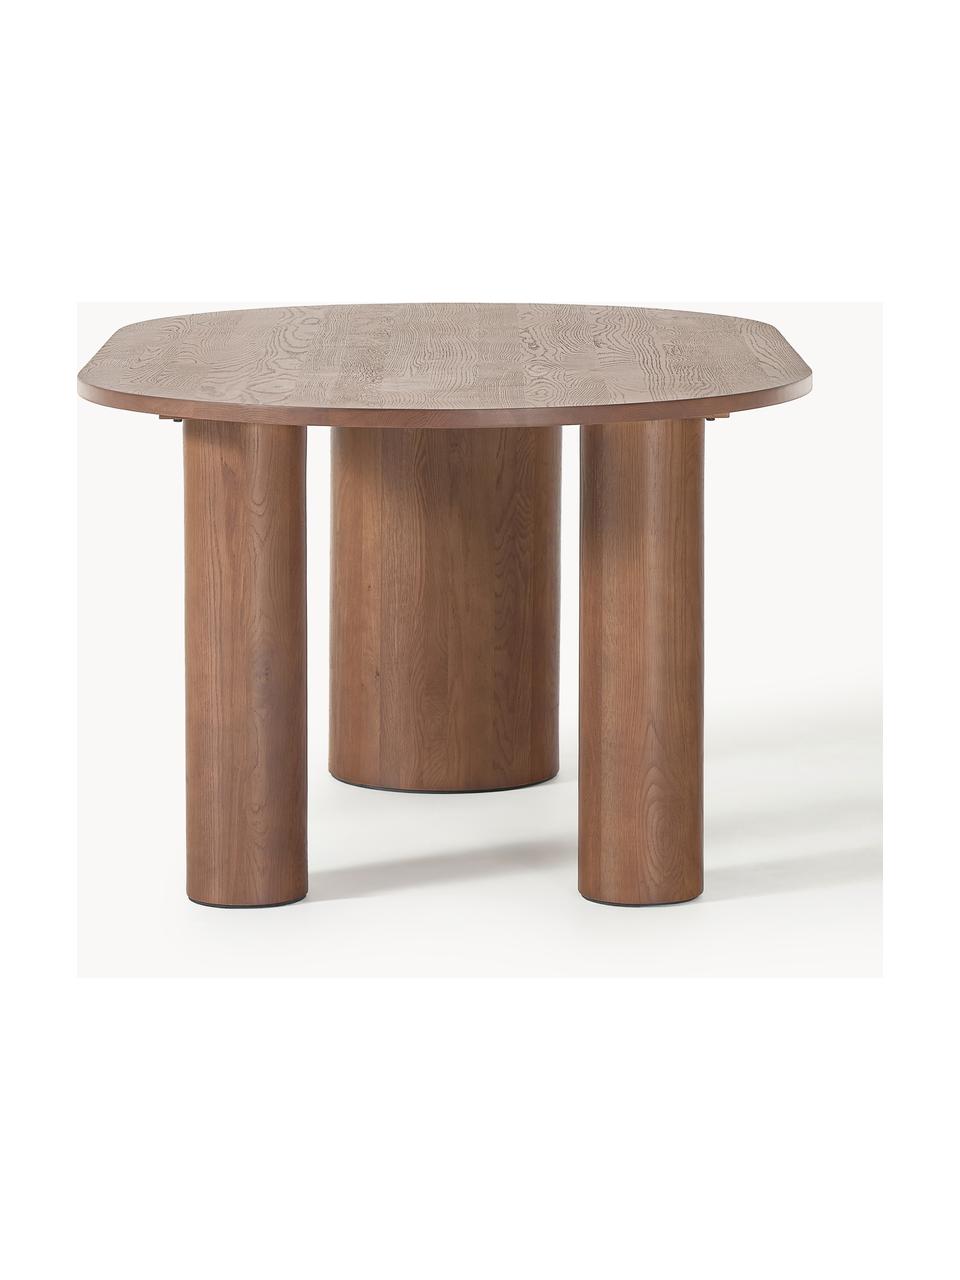 Oválný jídelní stůl z dubového dřeva Dunia, 180 x 110 cm, Masivní dubové dřevo, olejované

Tento produkt je vyroben z udržitelných zdrojů dřeva s certifikací FSC®., Dubové dřevo, hnědě olejované, Š 180 cm, H 110 cm